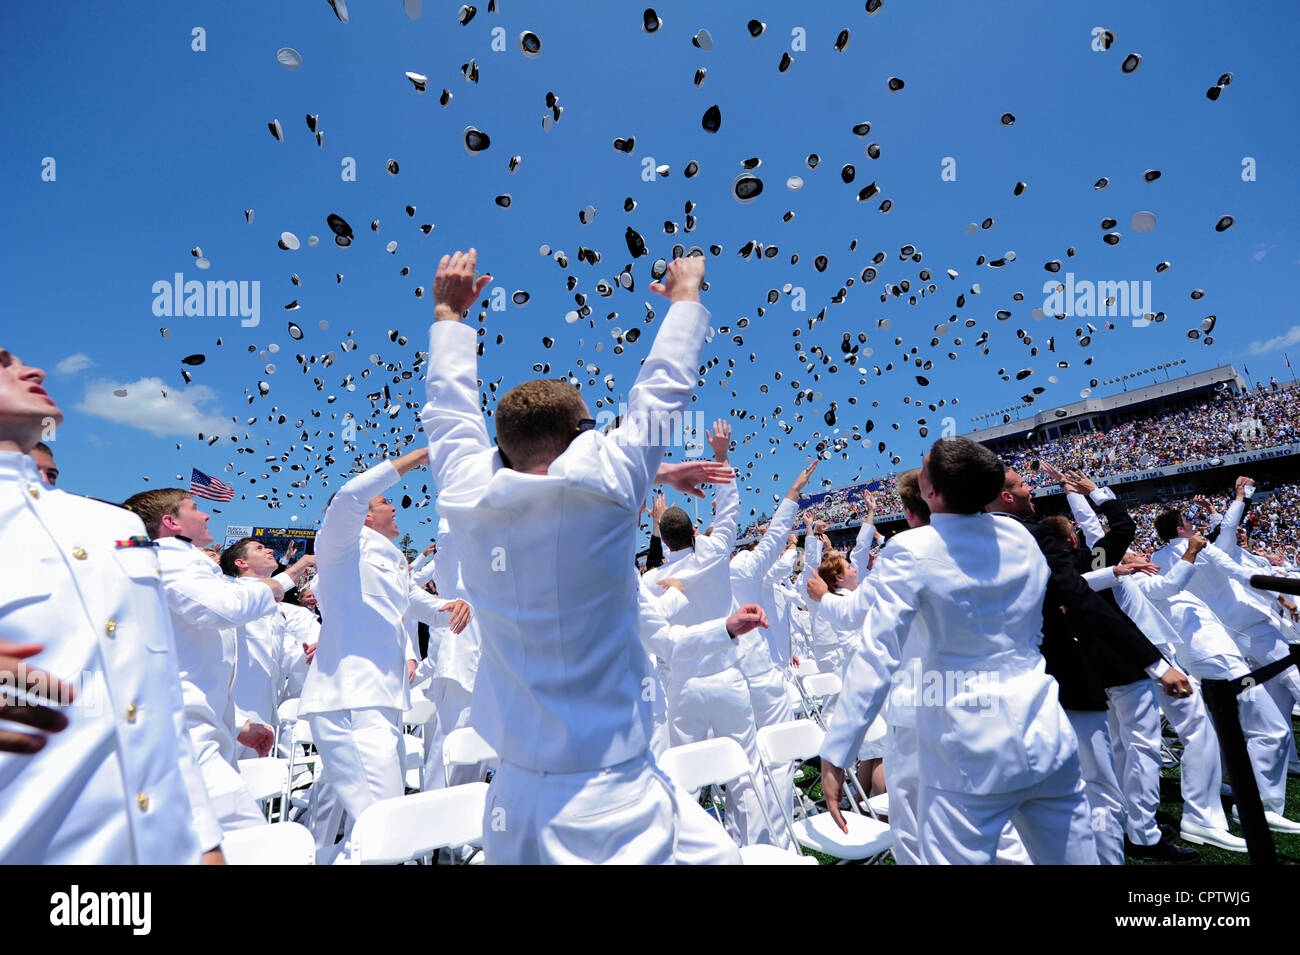 Ensigns und Second Leutnants werfen ihre Abdeckungen in die Luft, um den offiziellen Abschluss der US Naval Academy Graduierung und Inbetriebnahme 2012 Zeremonie zu markieren Stockfoto